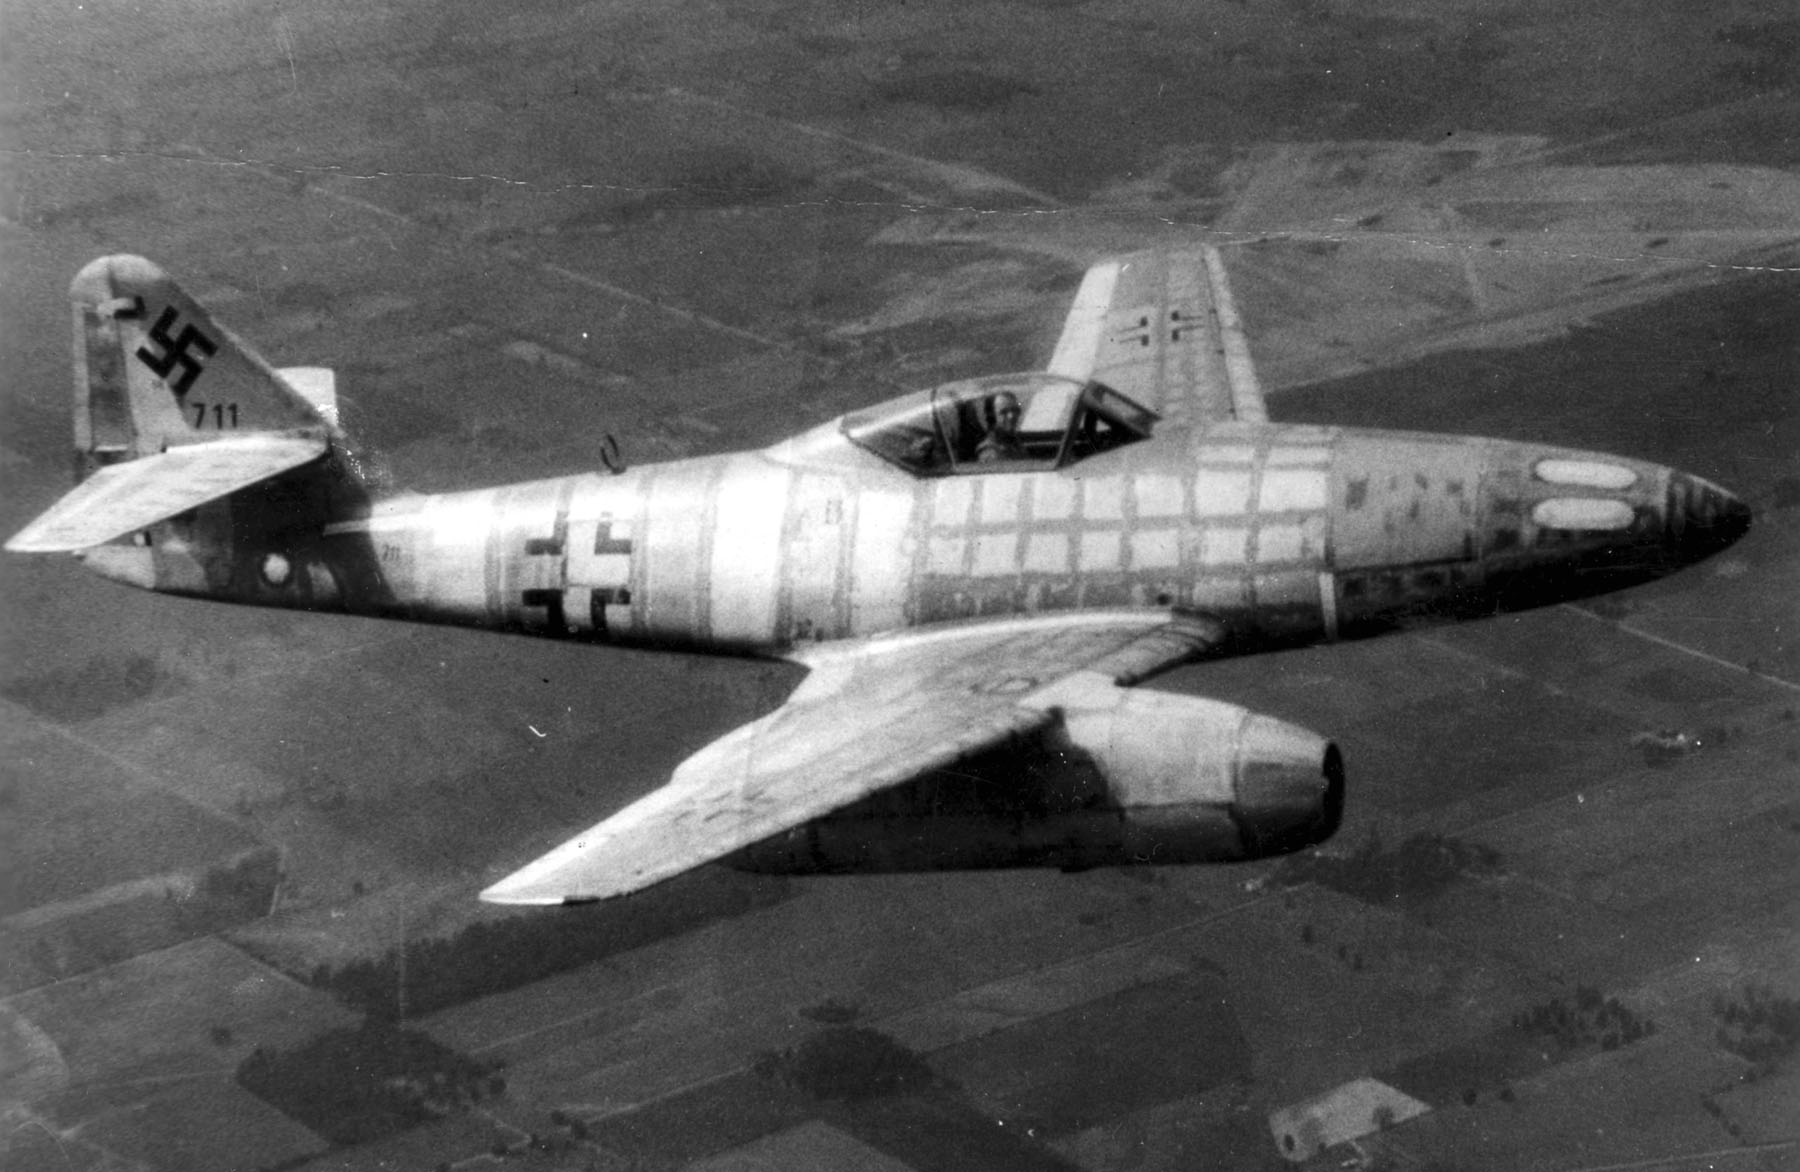 Messerschmitt Me 262 Backgrounds on Wallpapers Vista